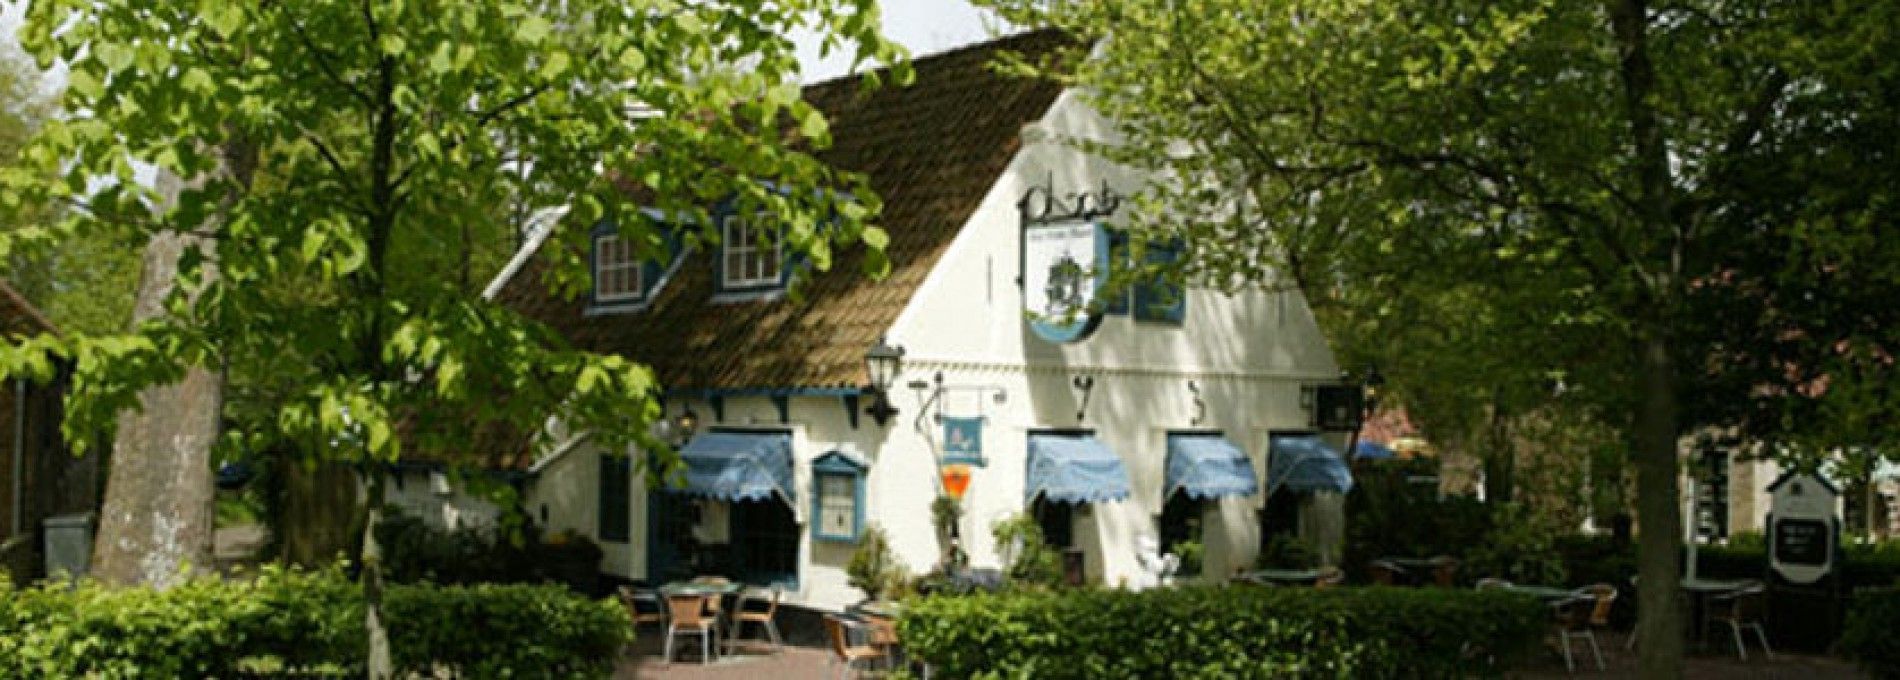 Restaurants in Nes - VVV Ameland